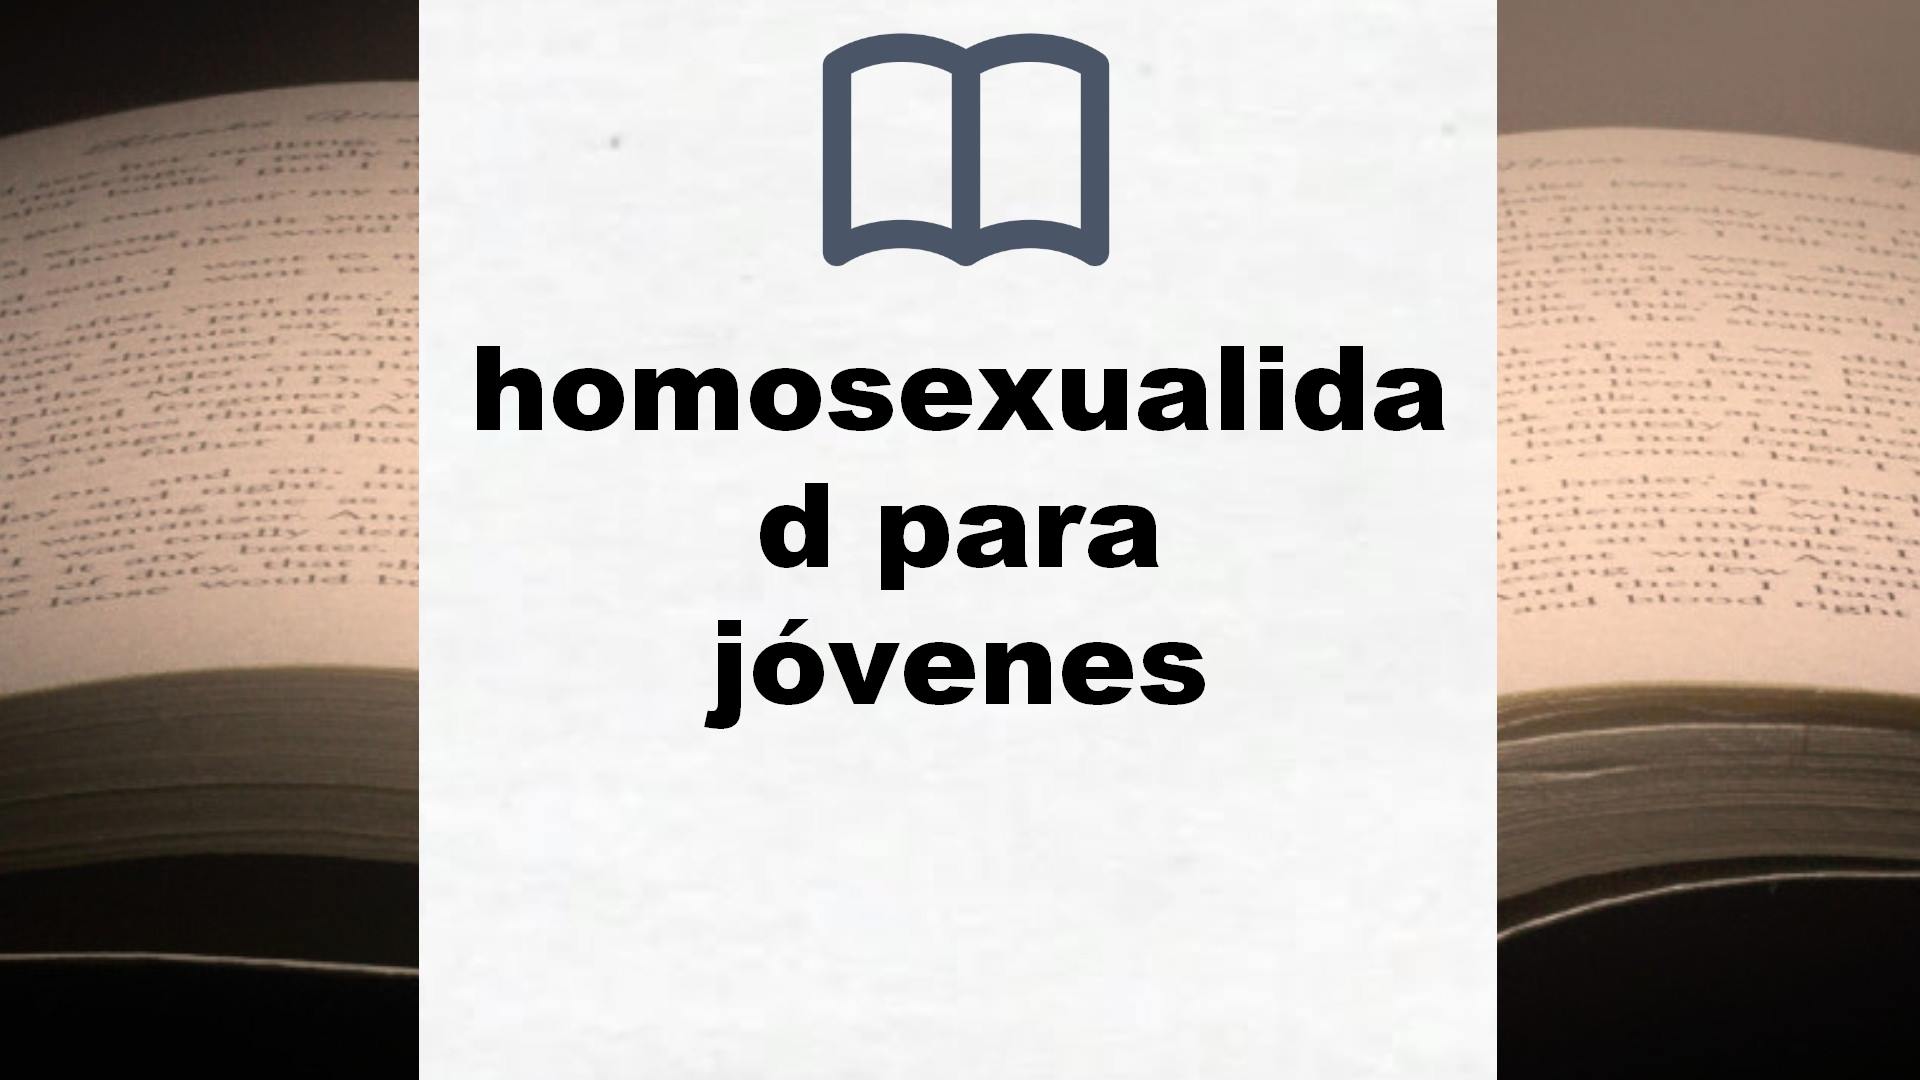 Libros sobre homosexualidad para jóvenes